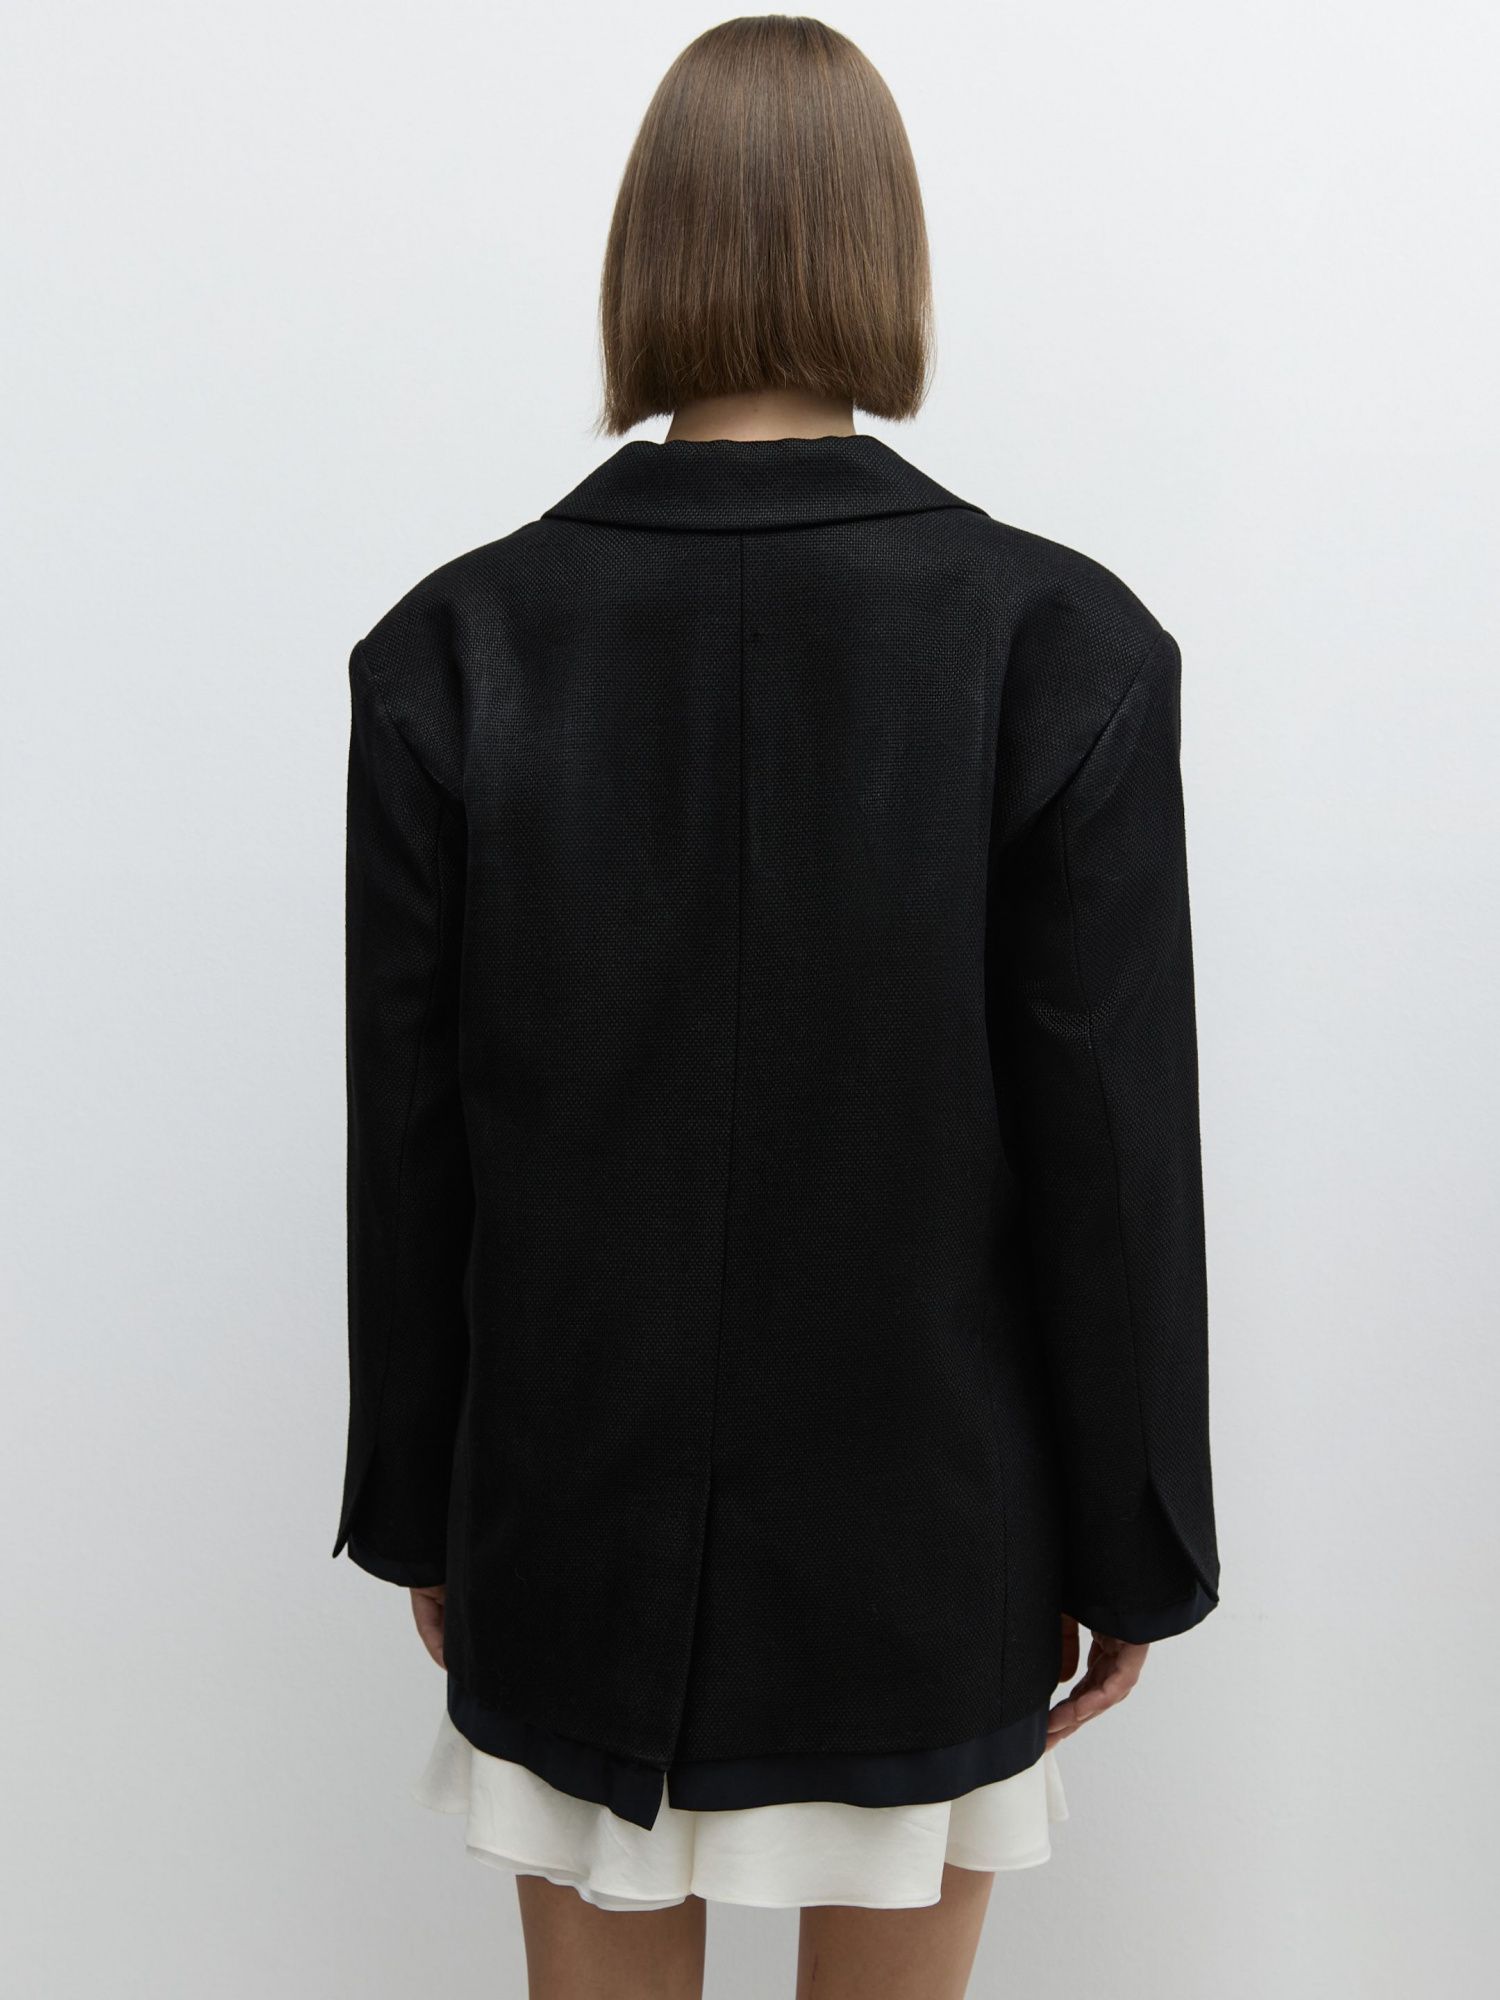 Жакет изо льна с имитацией рубашки черный - фото 8. Around